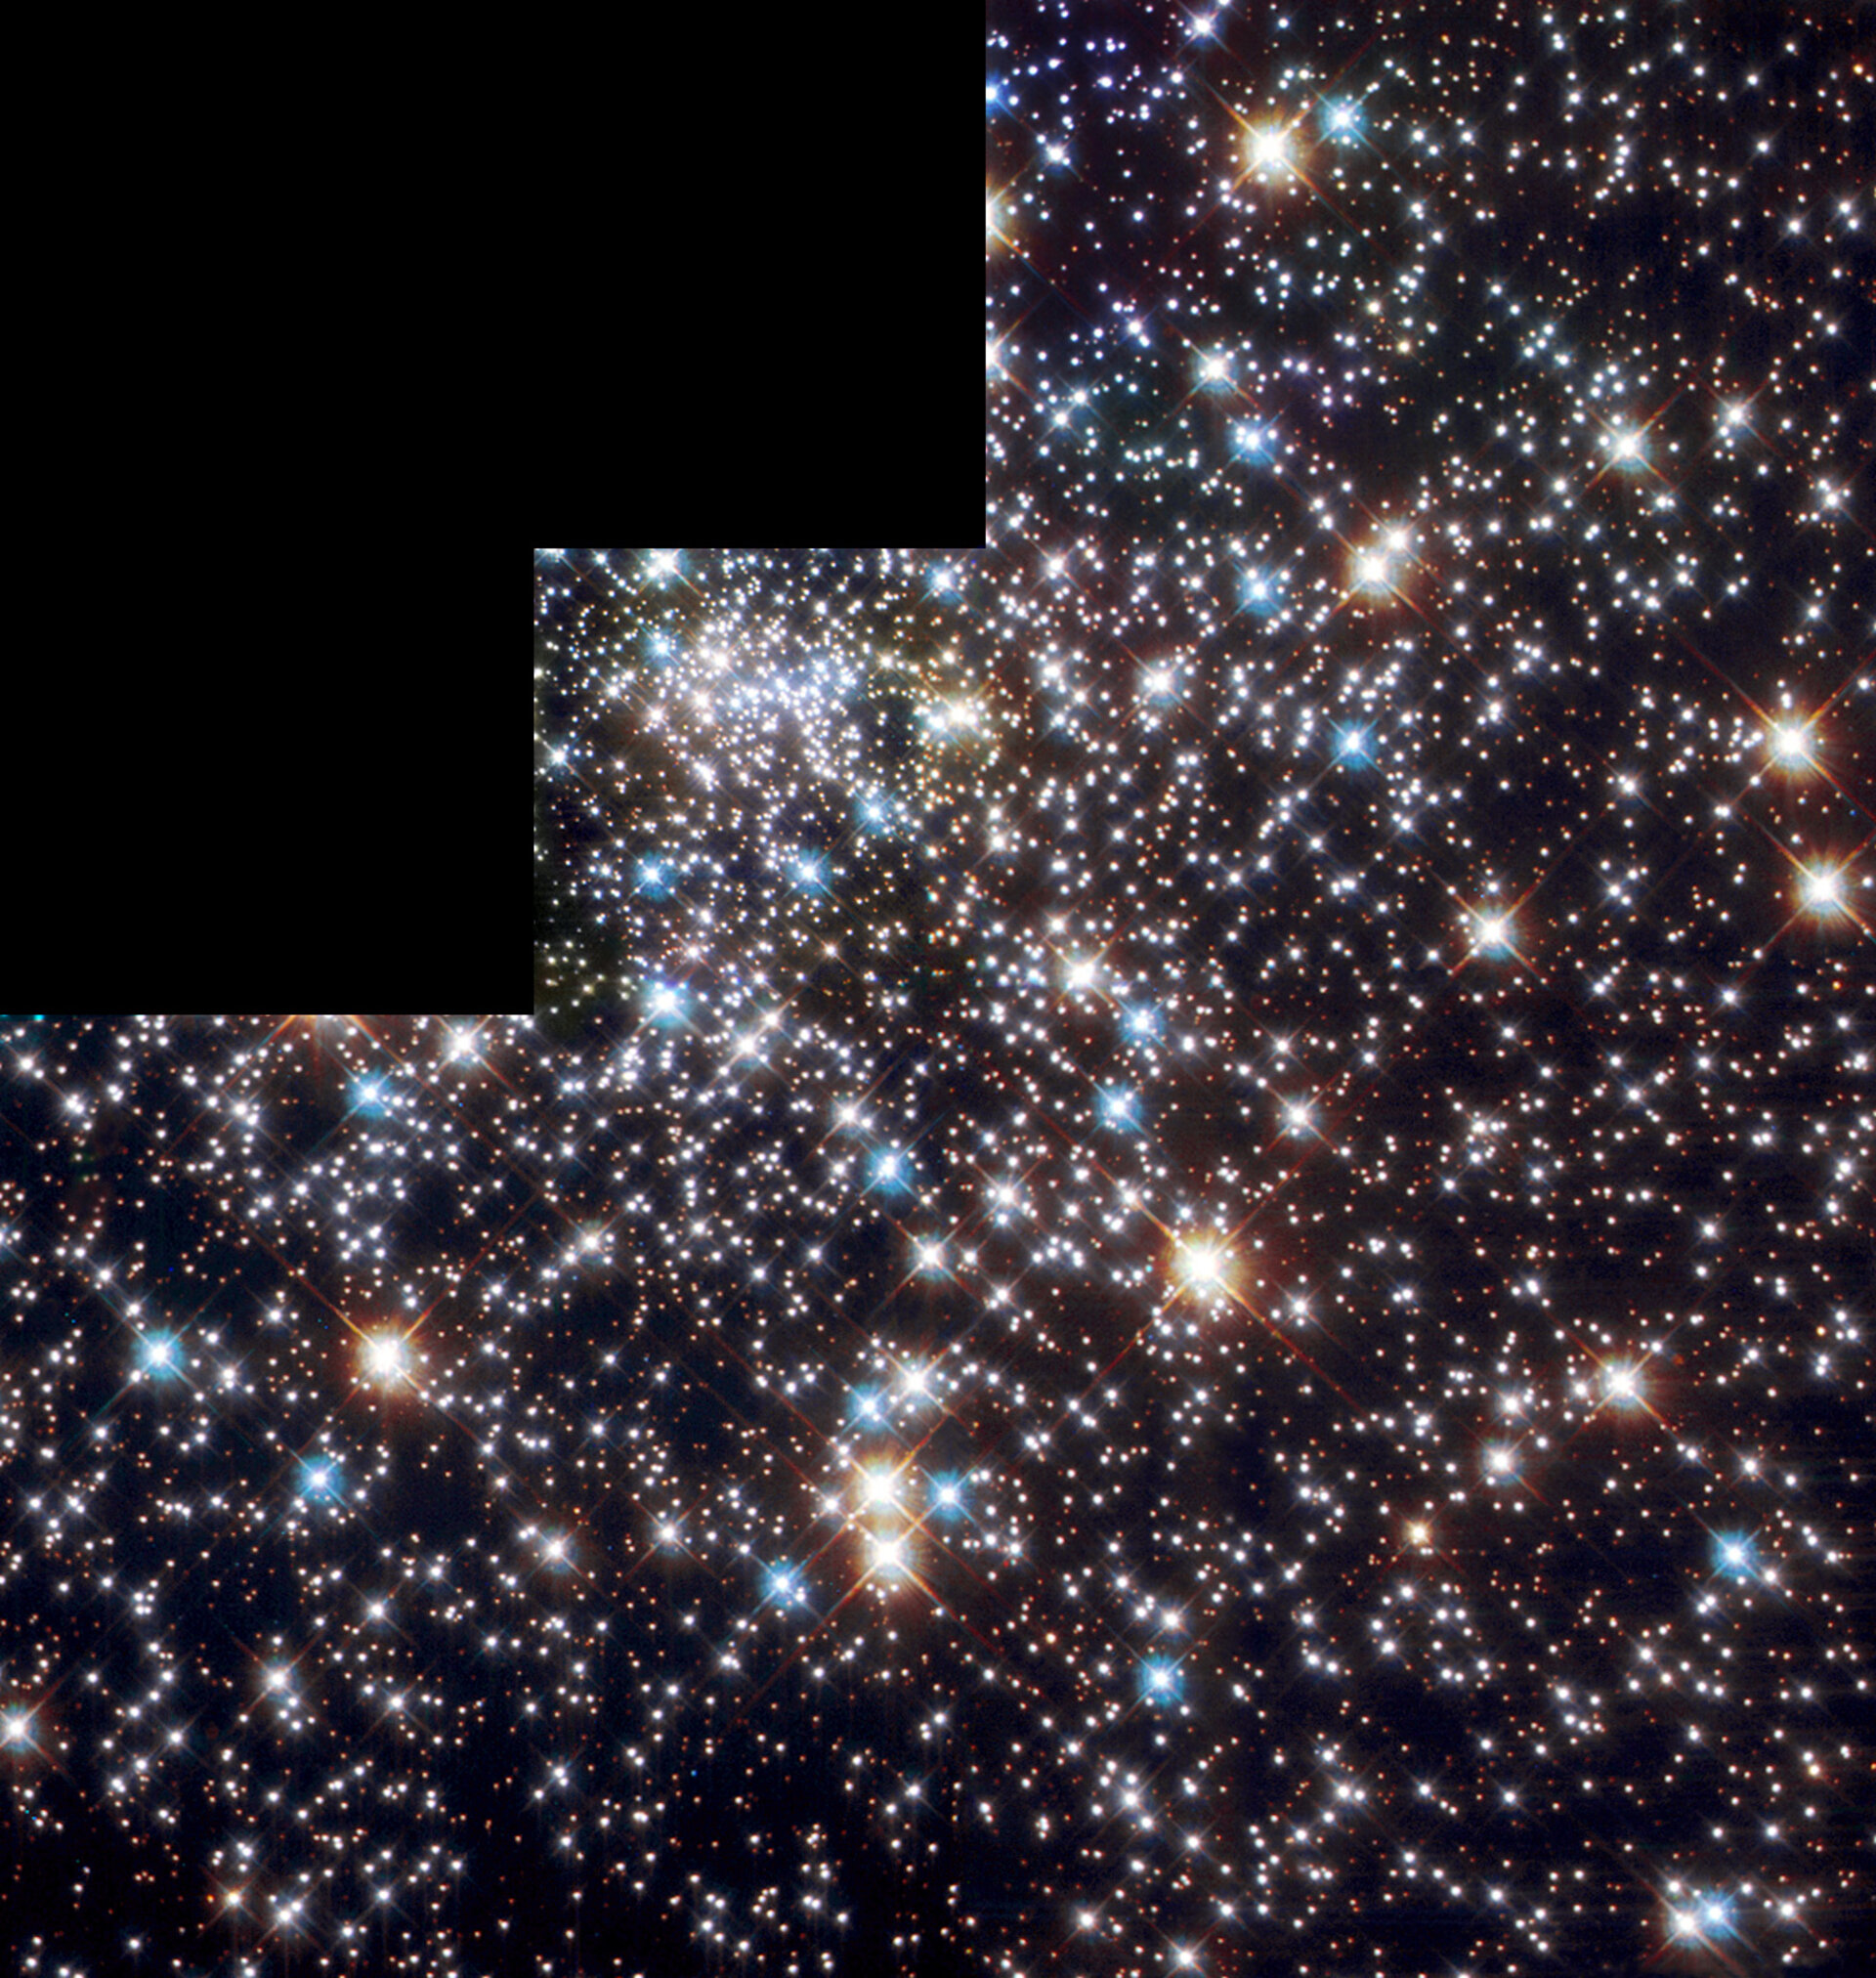 The globular cluster NGC 6397